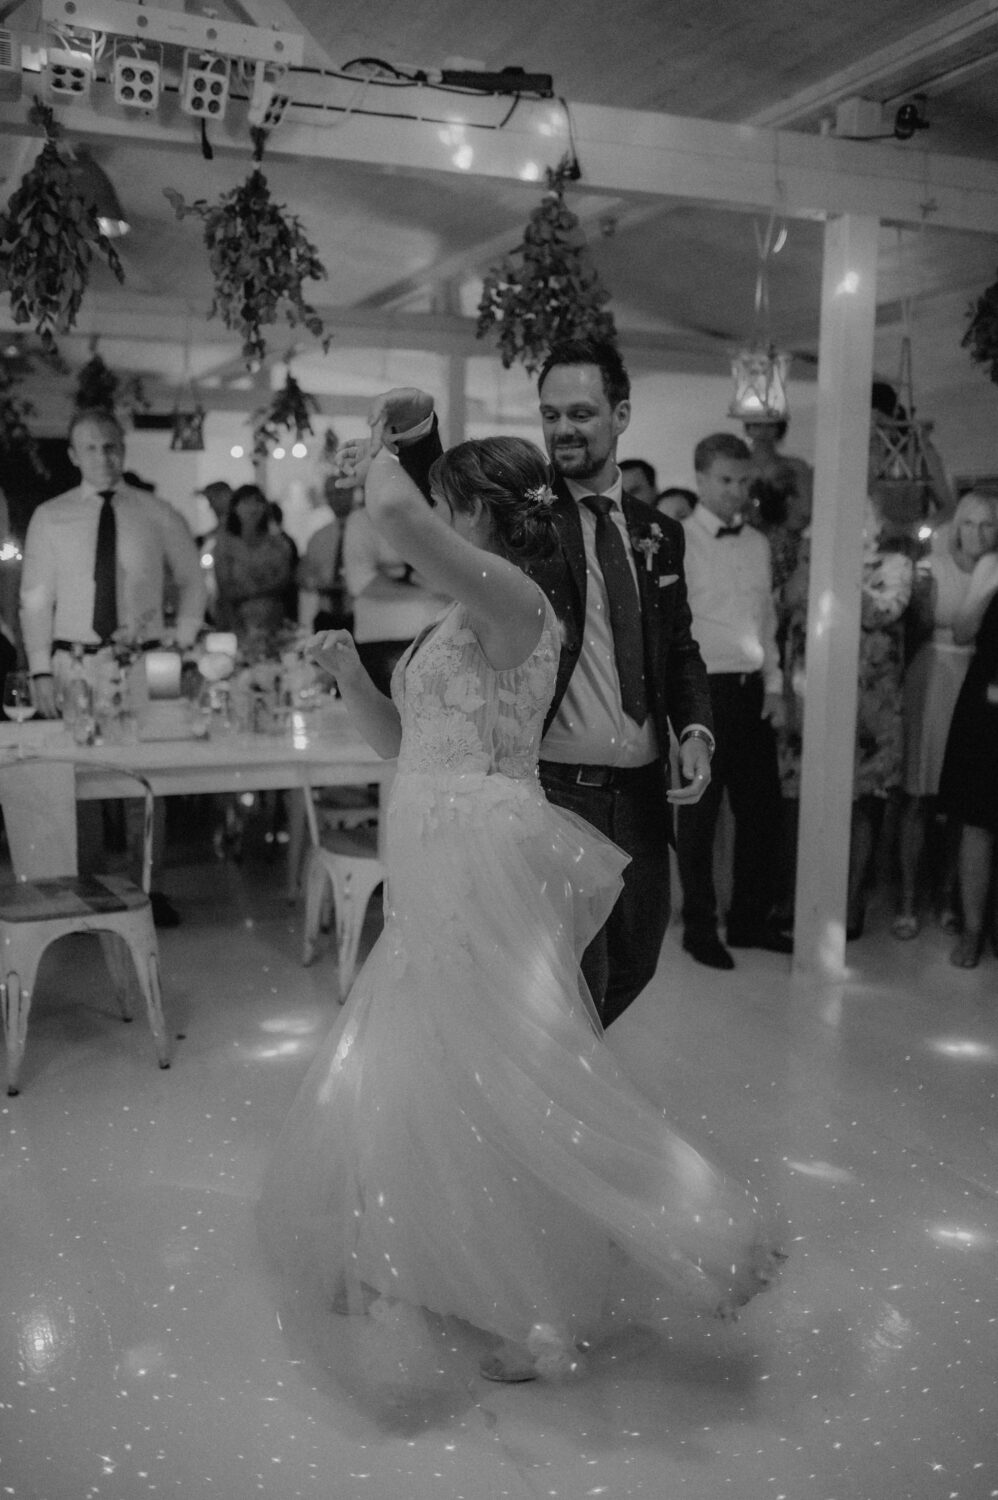 Ein tanzendes Brautpaar in einem romantischen Moment, festgehalten durch authentische Hochzeitsfotografie.